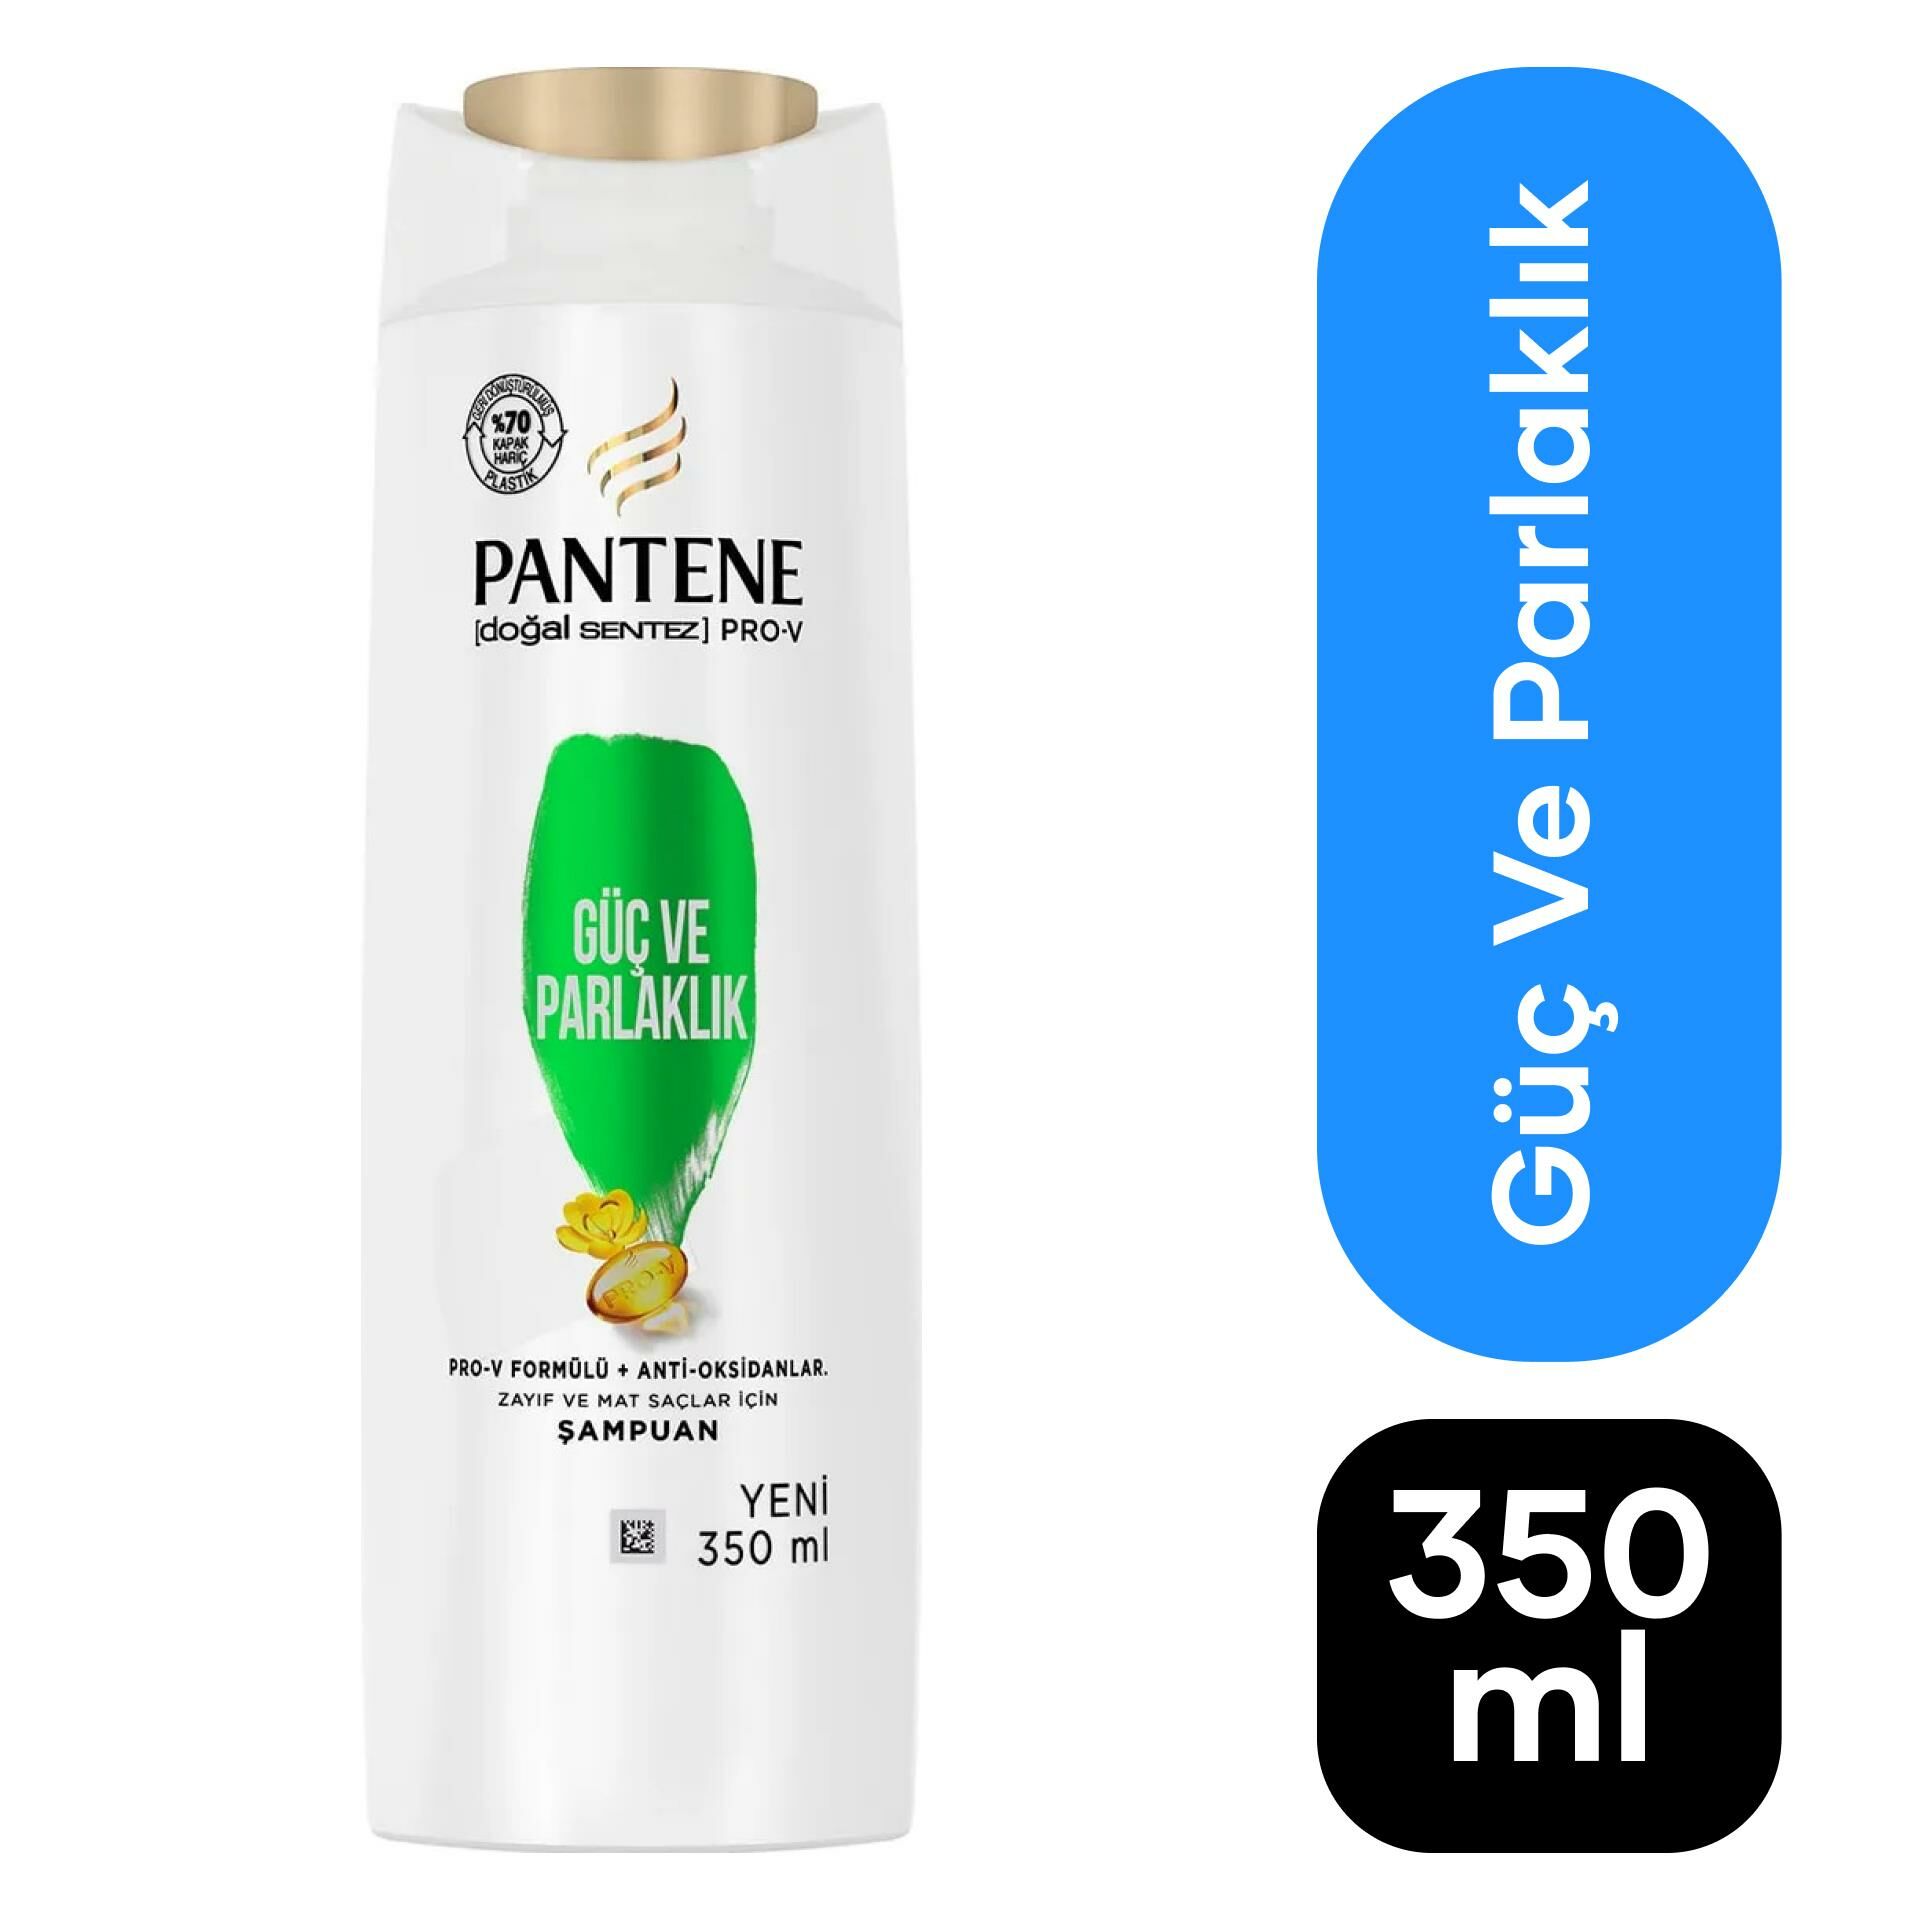 Pantene 350 ml Şampuan Güçlü ve Parlak